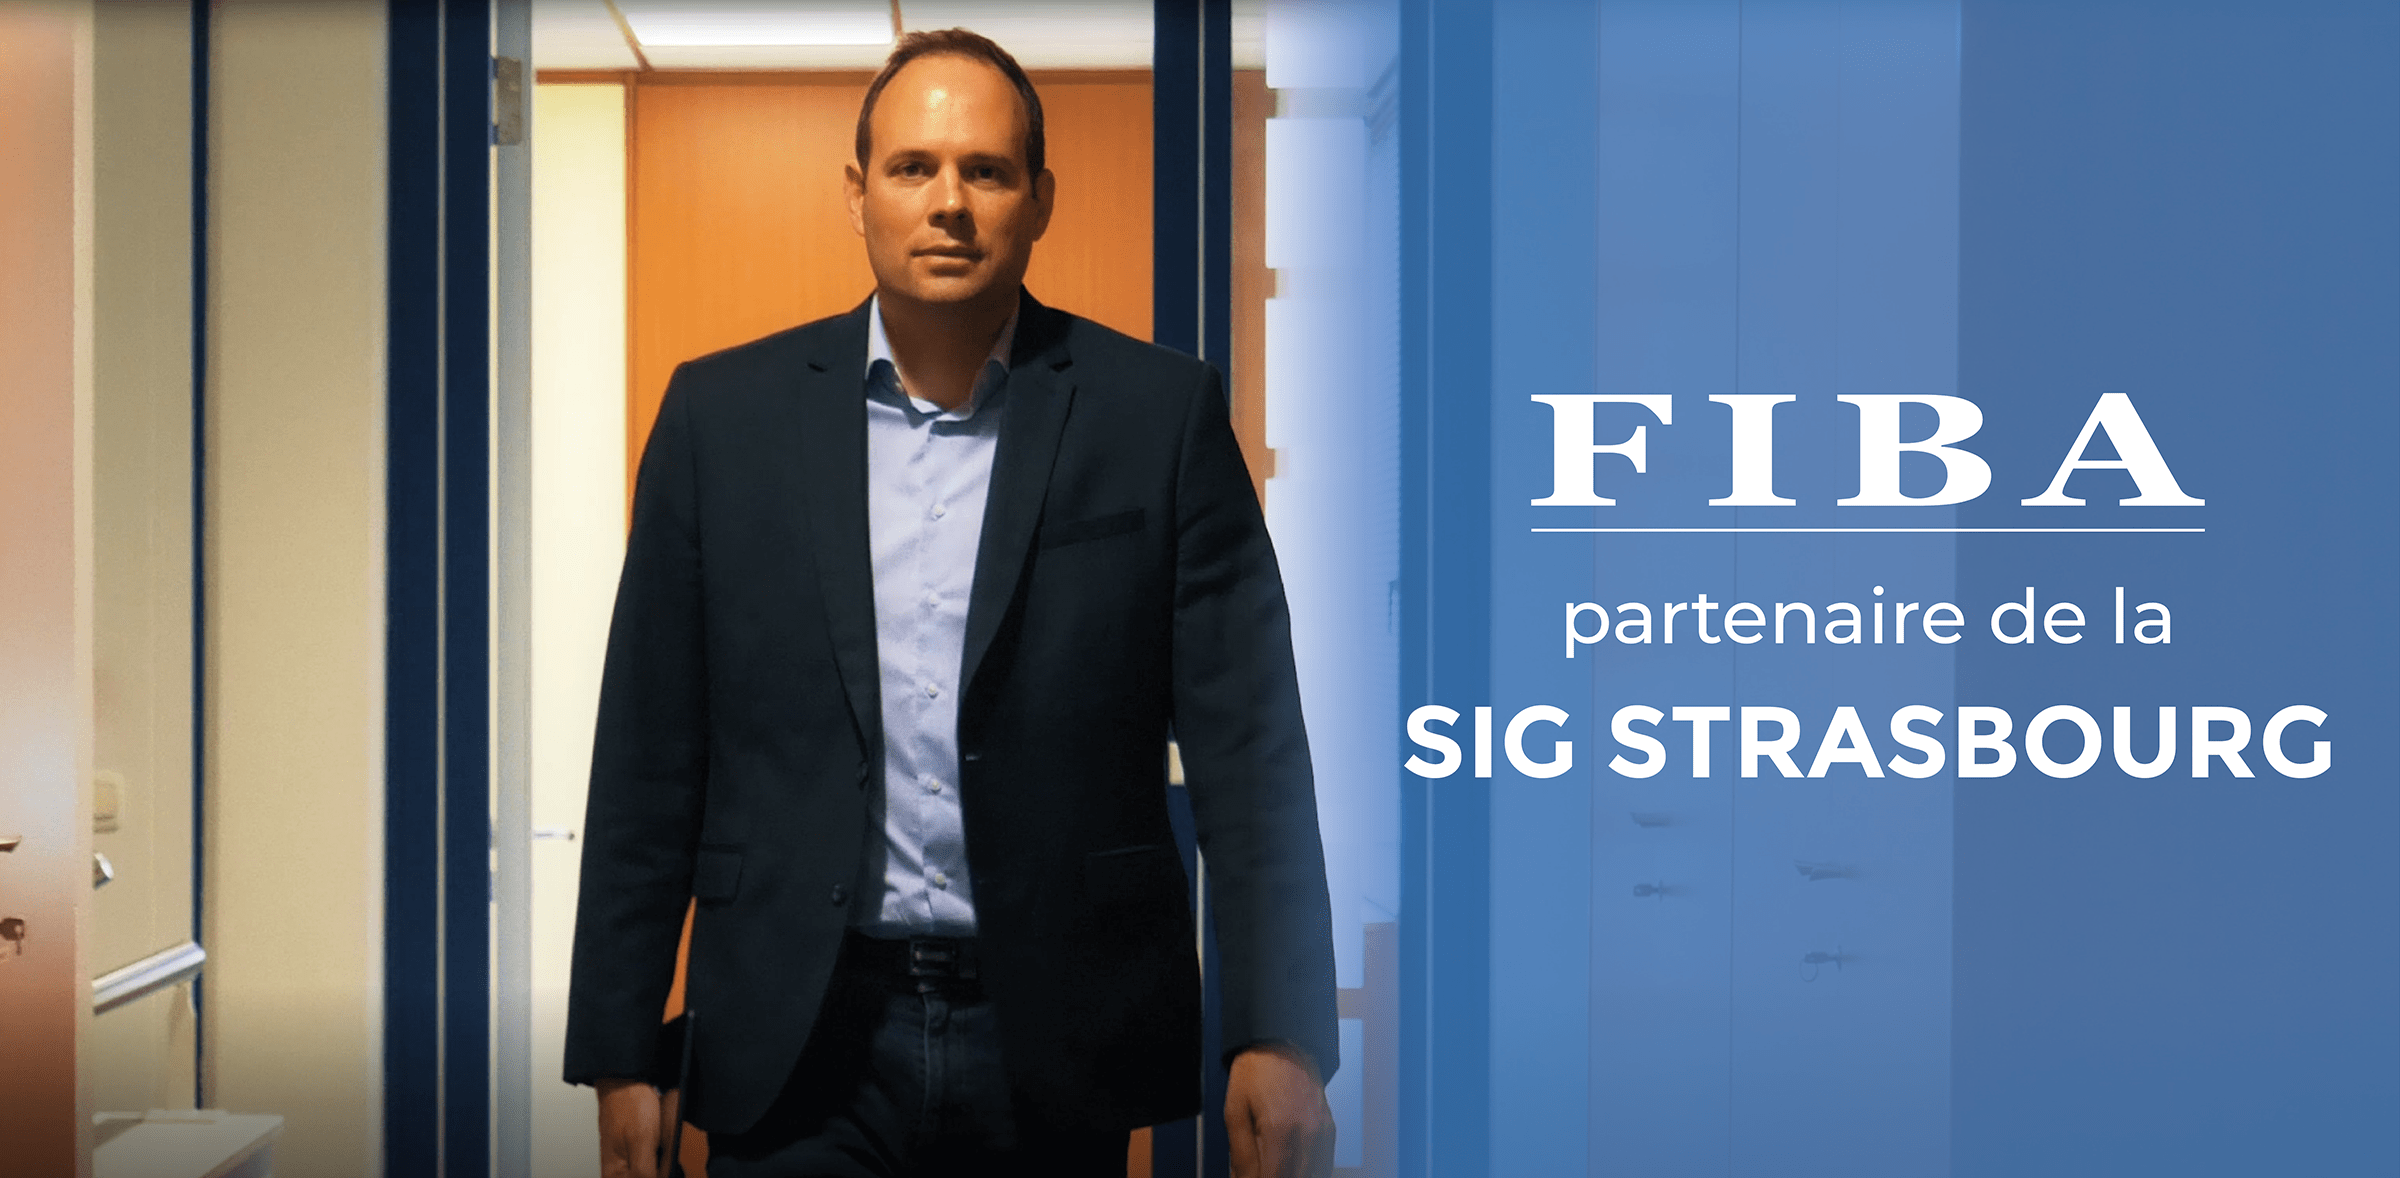 You are currently viewing FIBA partenaire de la SIG Strasbourg